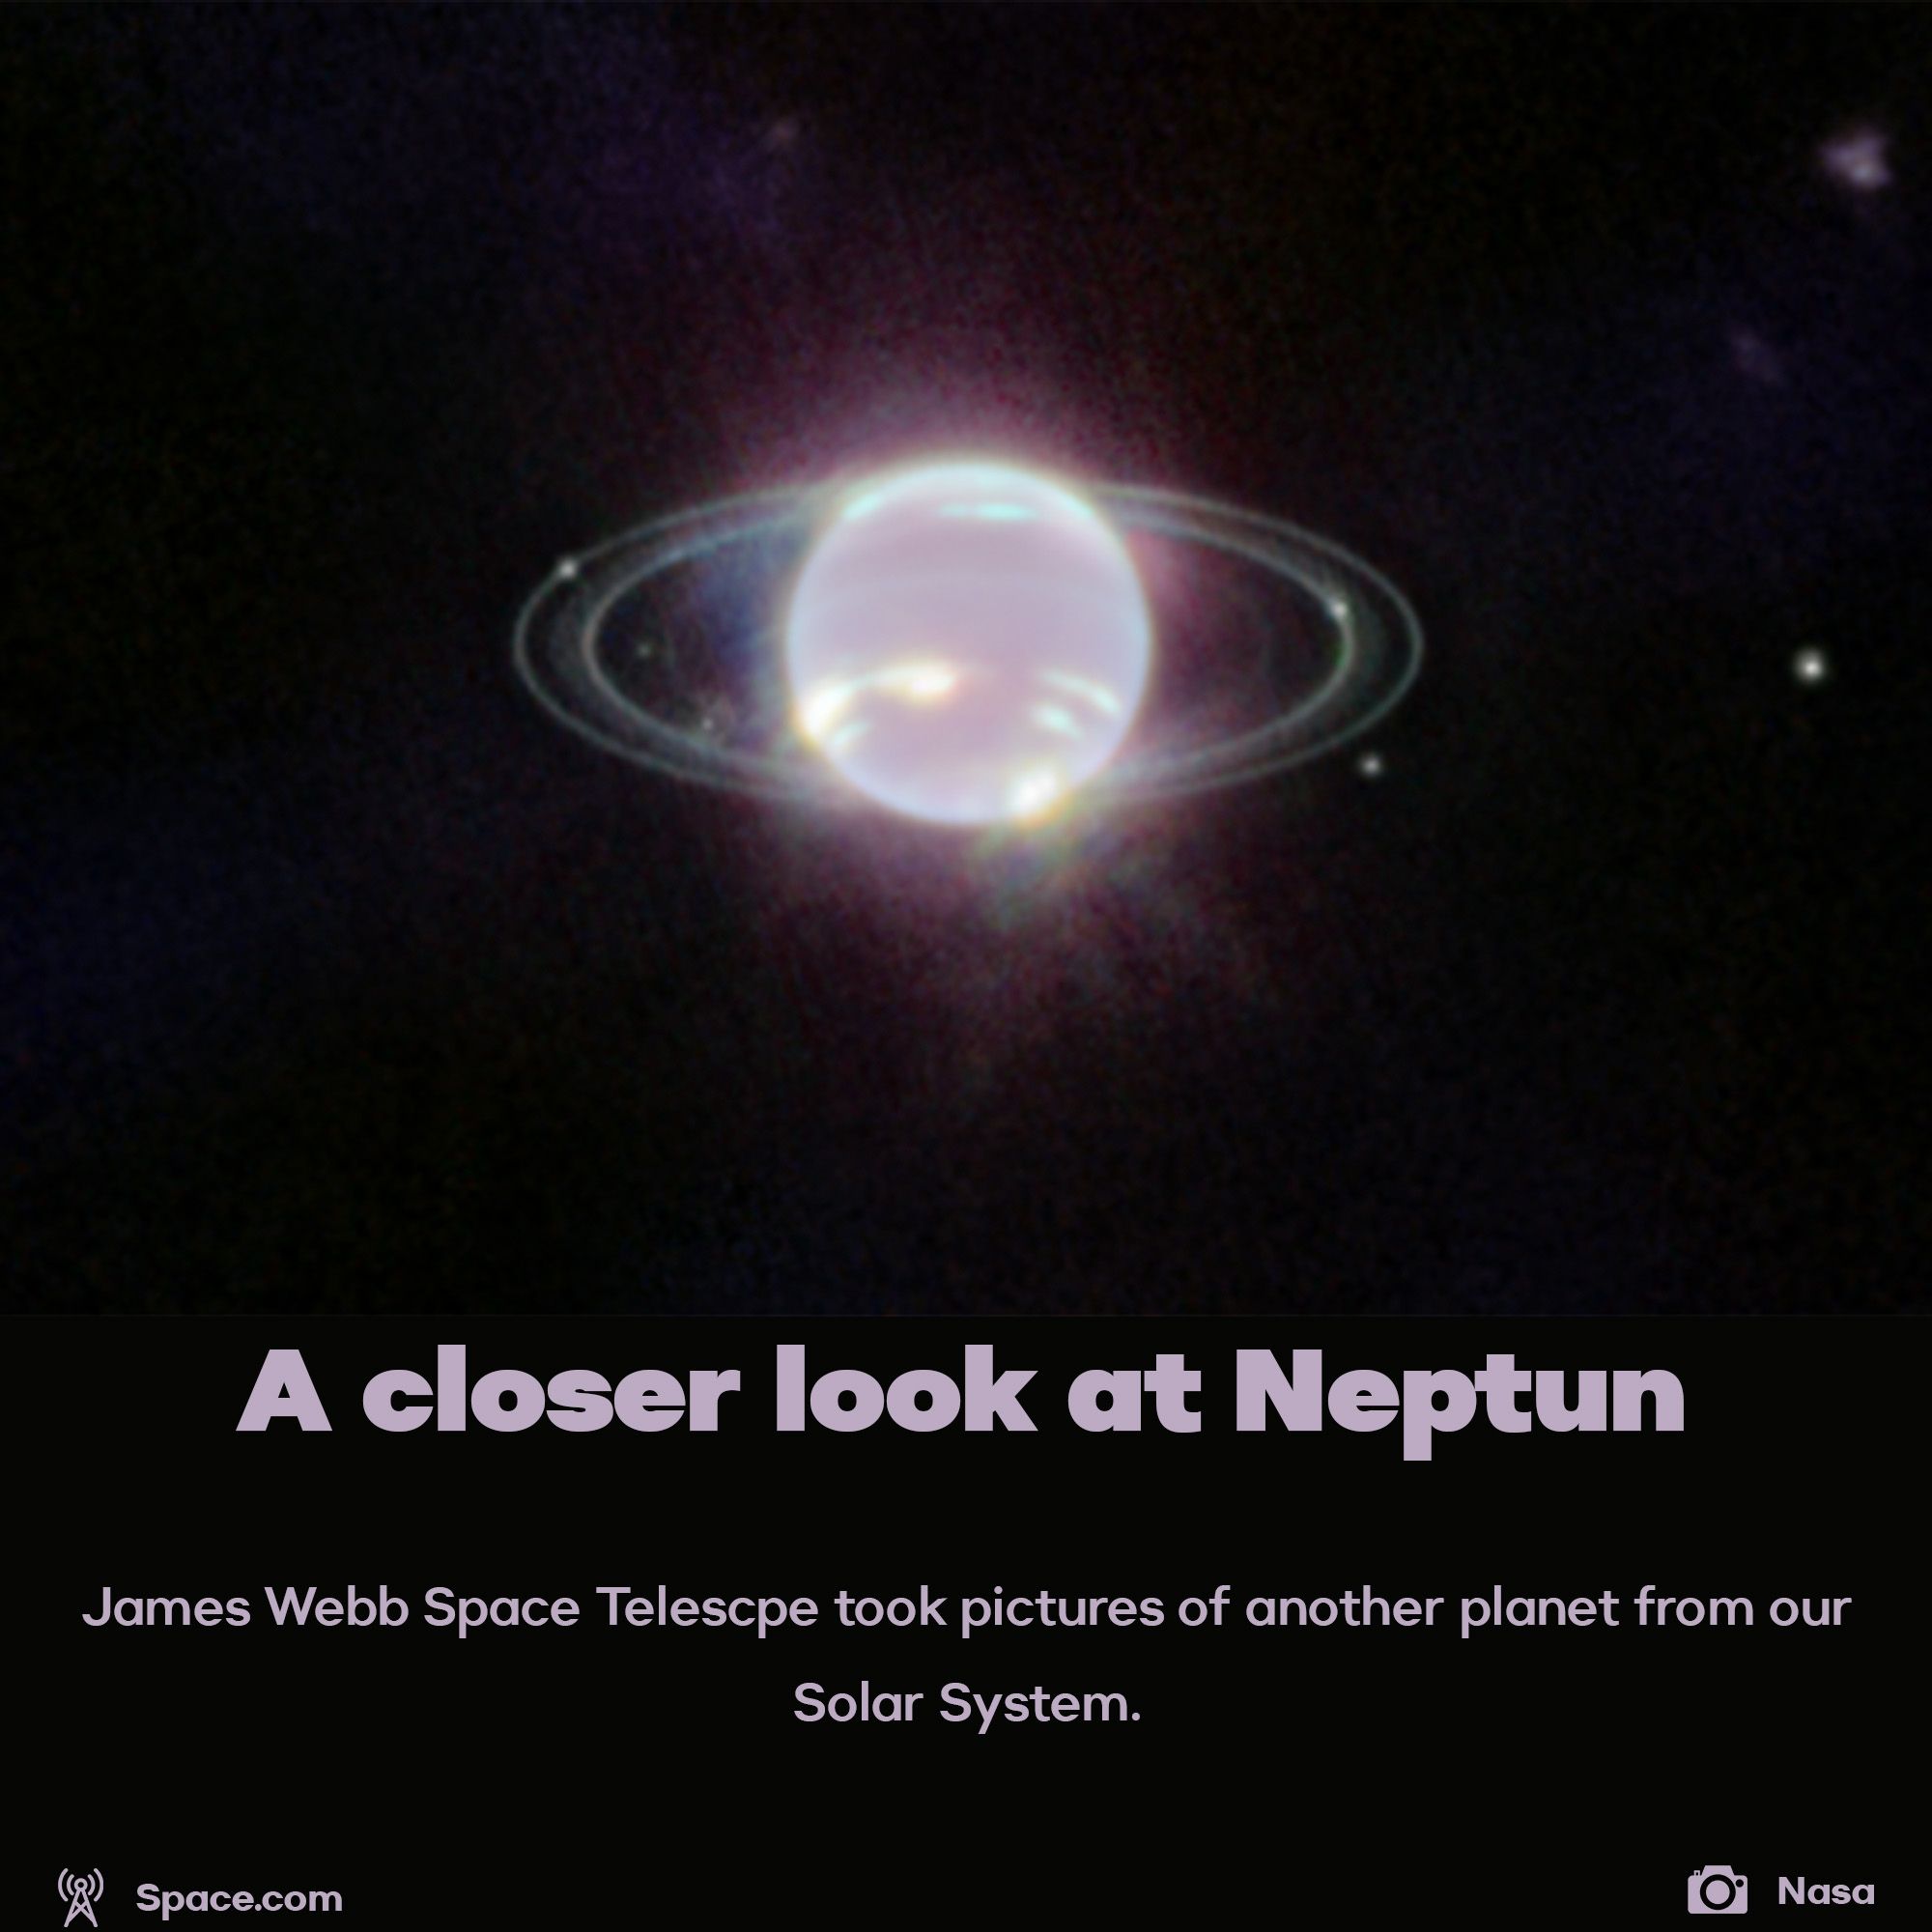 JWST captures Neptun